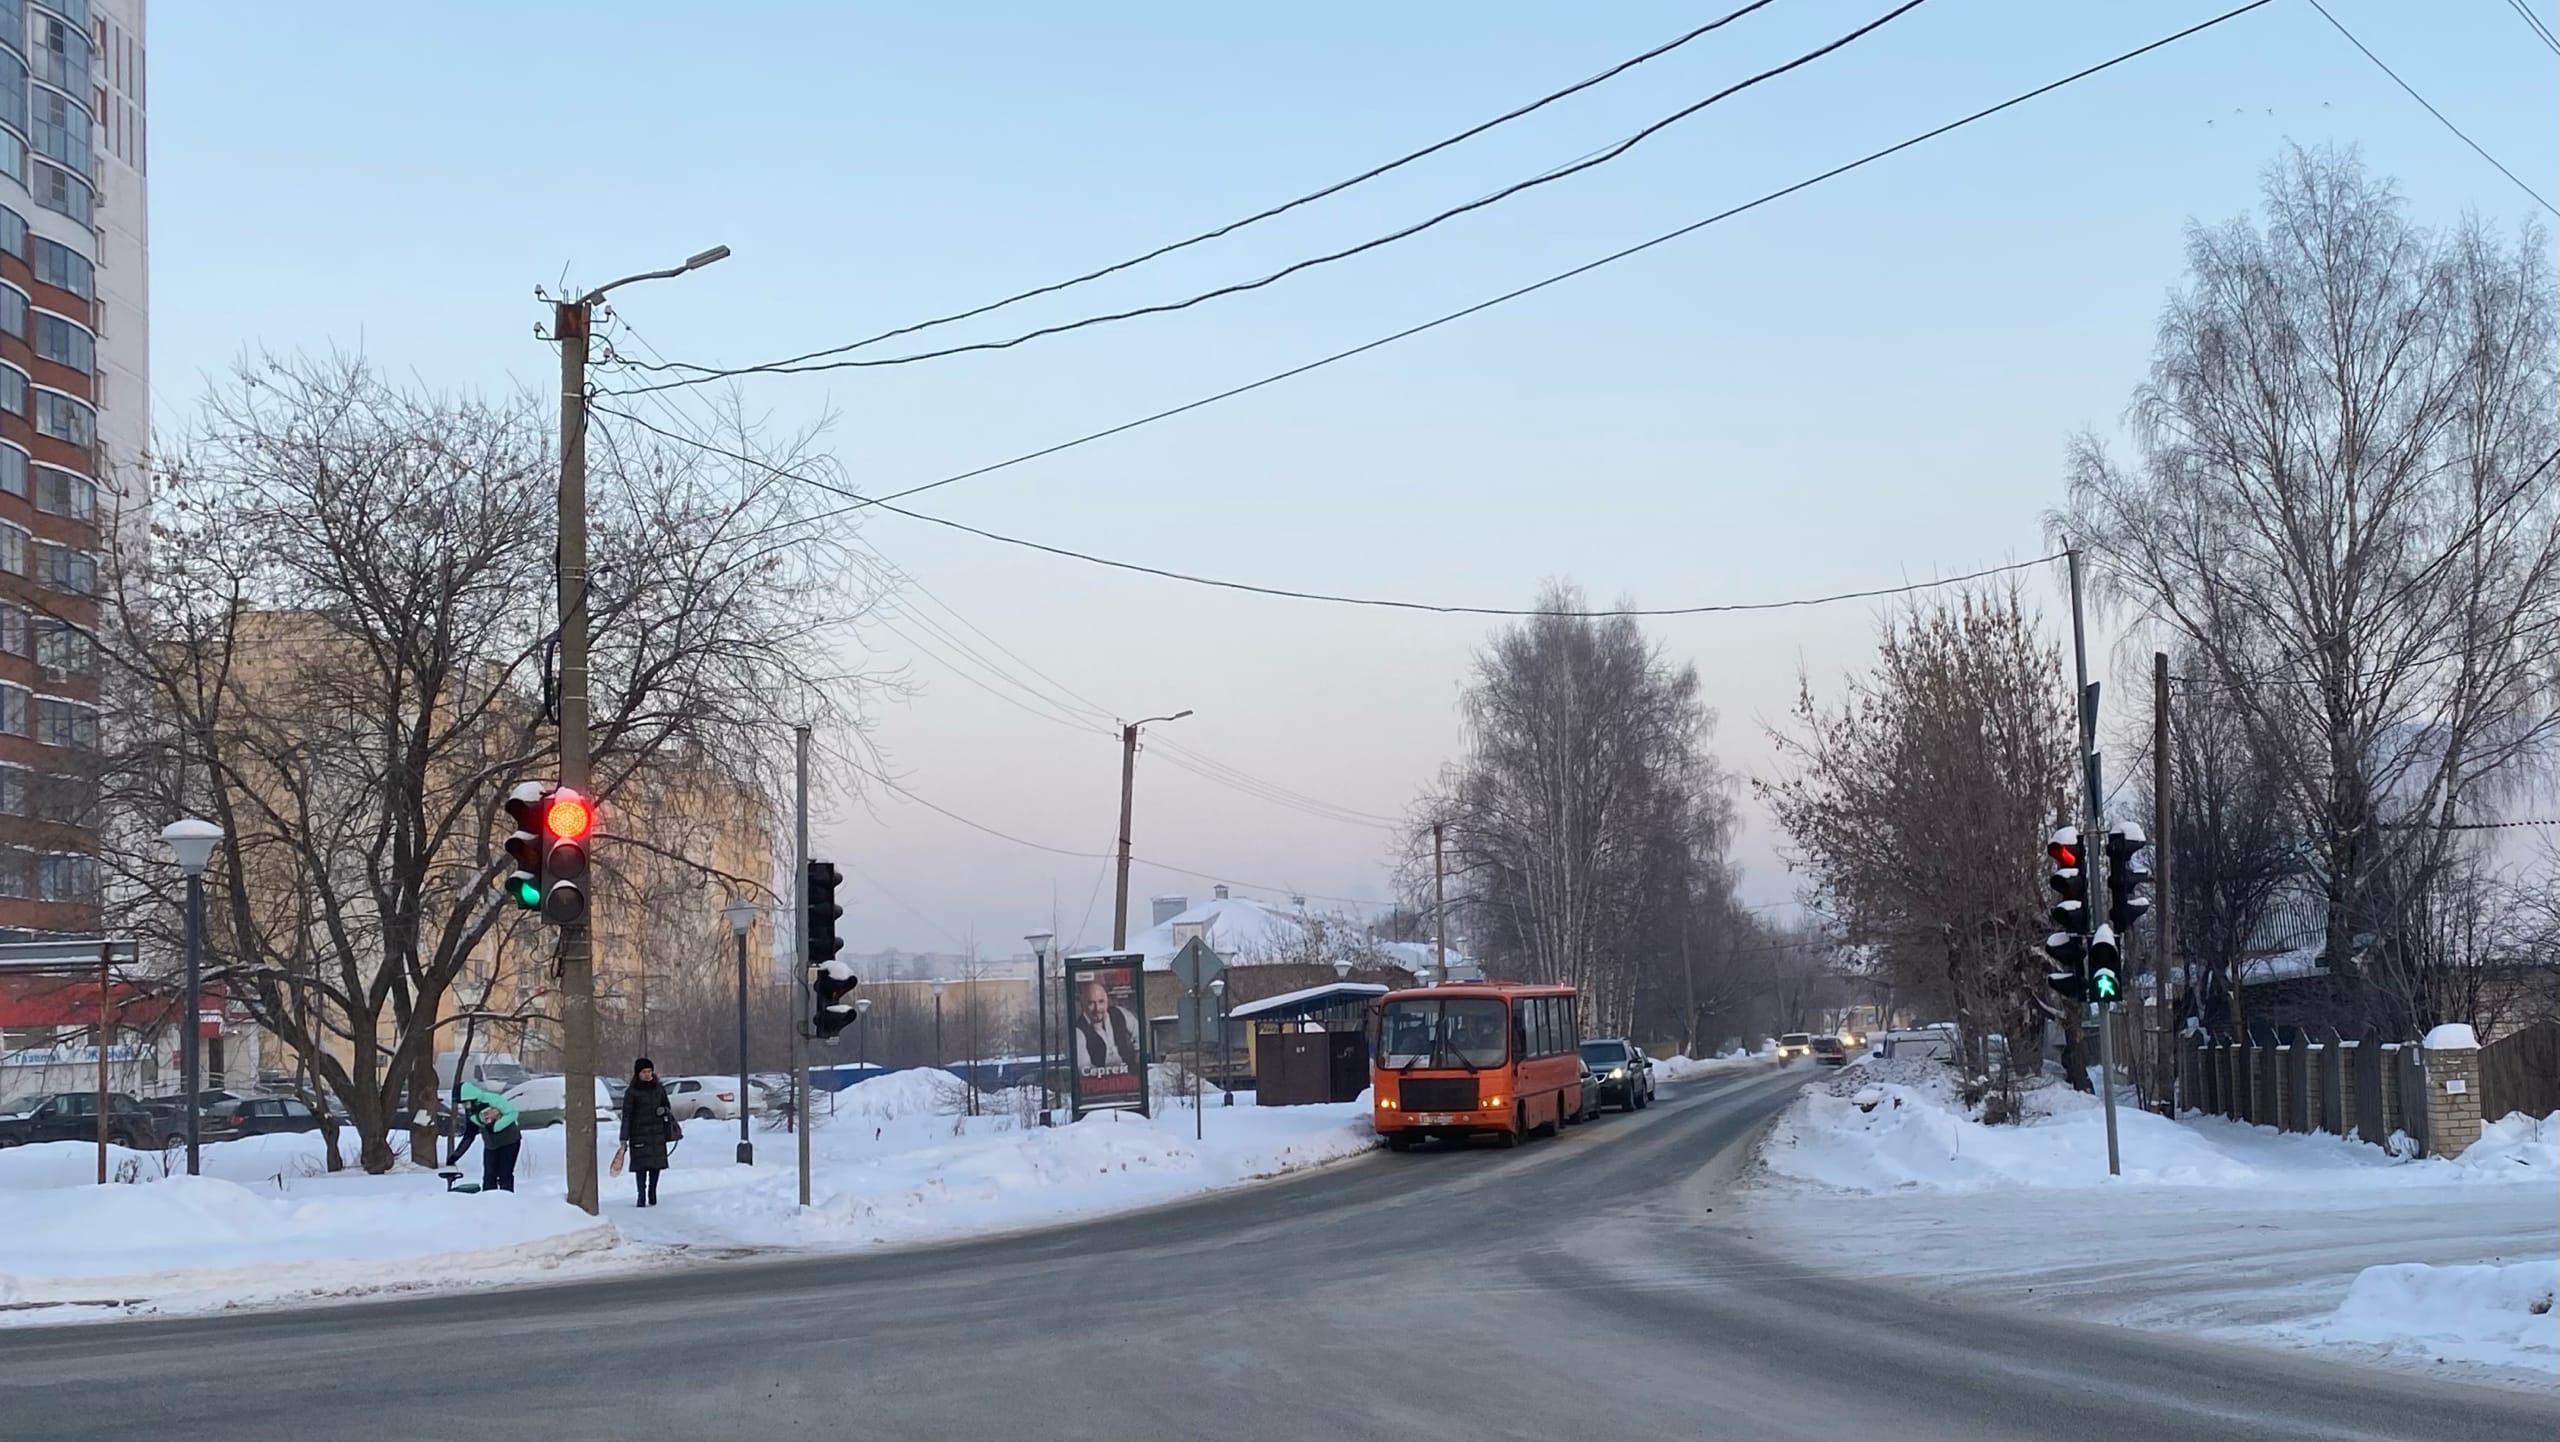 Крепкий мороз и гололедица на дорогах: прогноз погоды на 7 и 8 января в Кирове